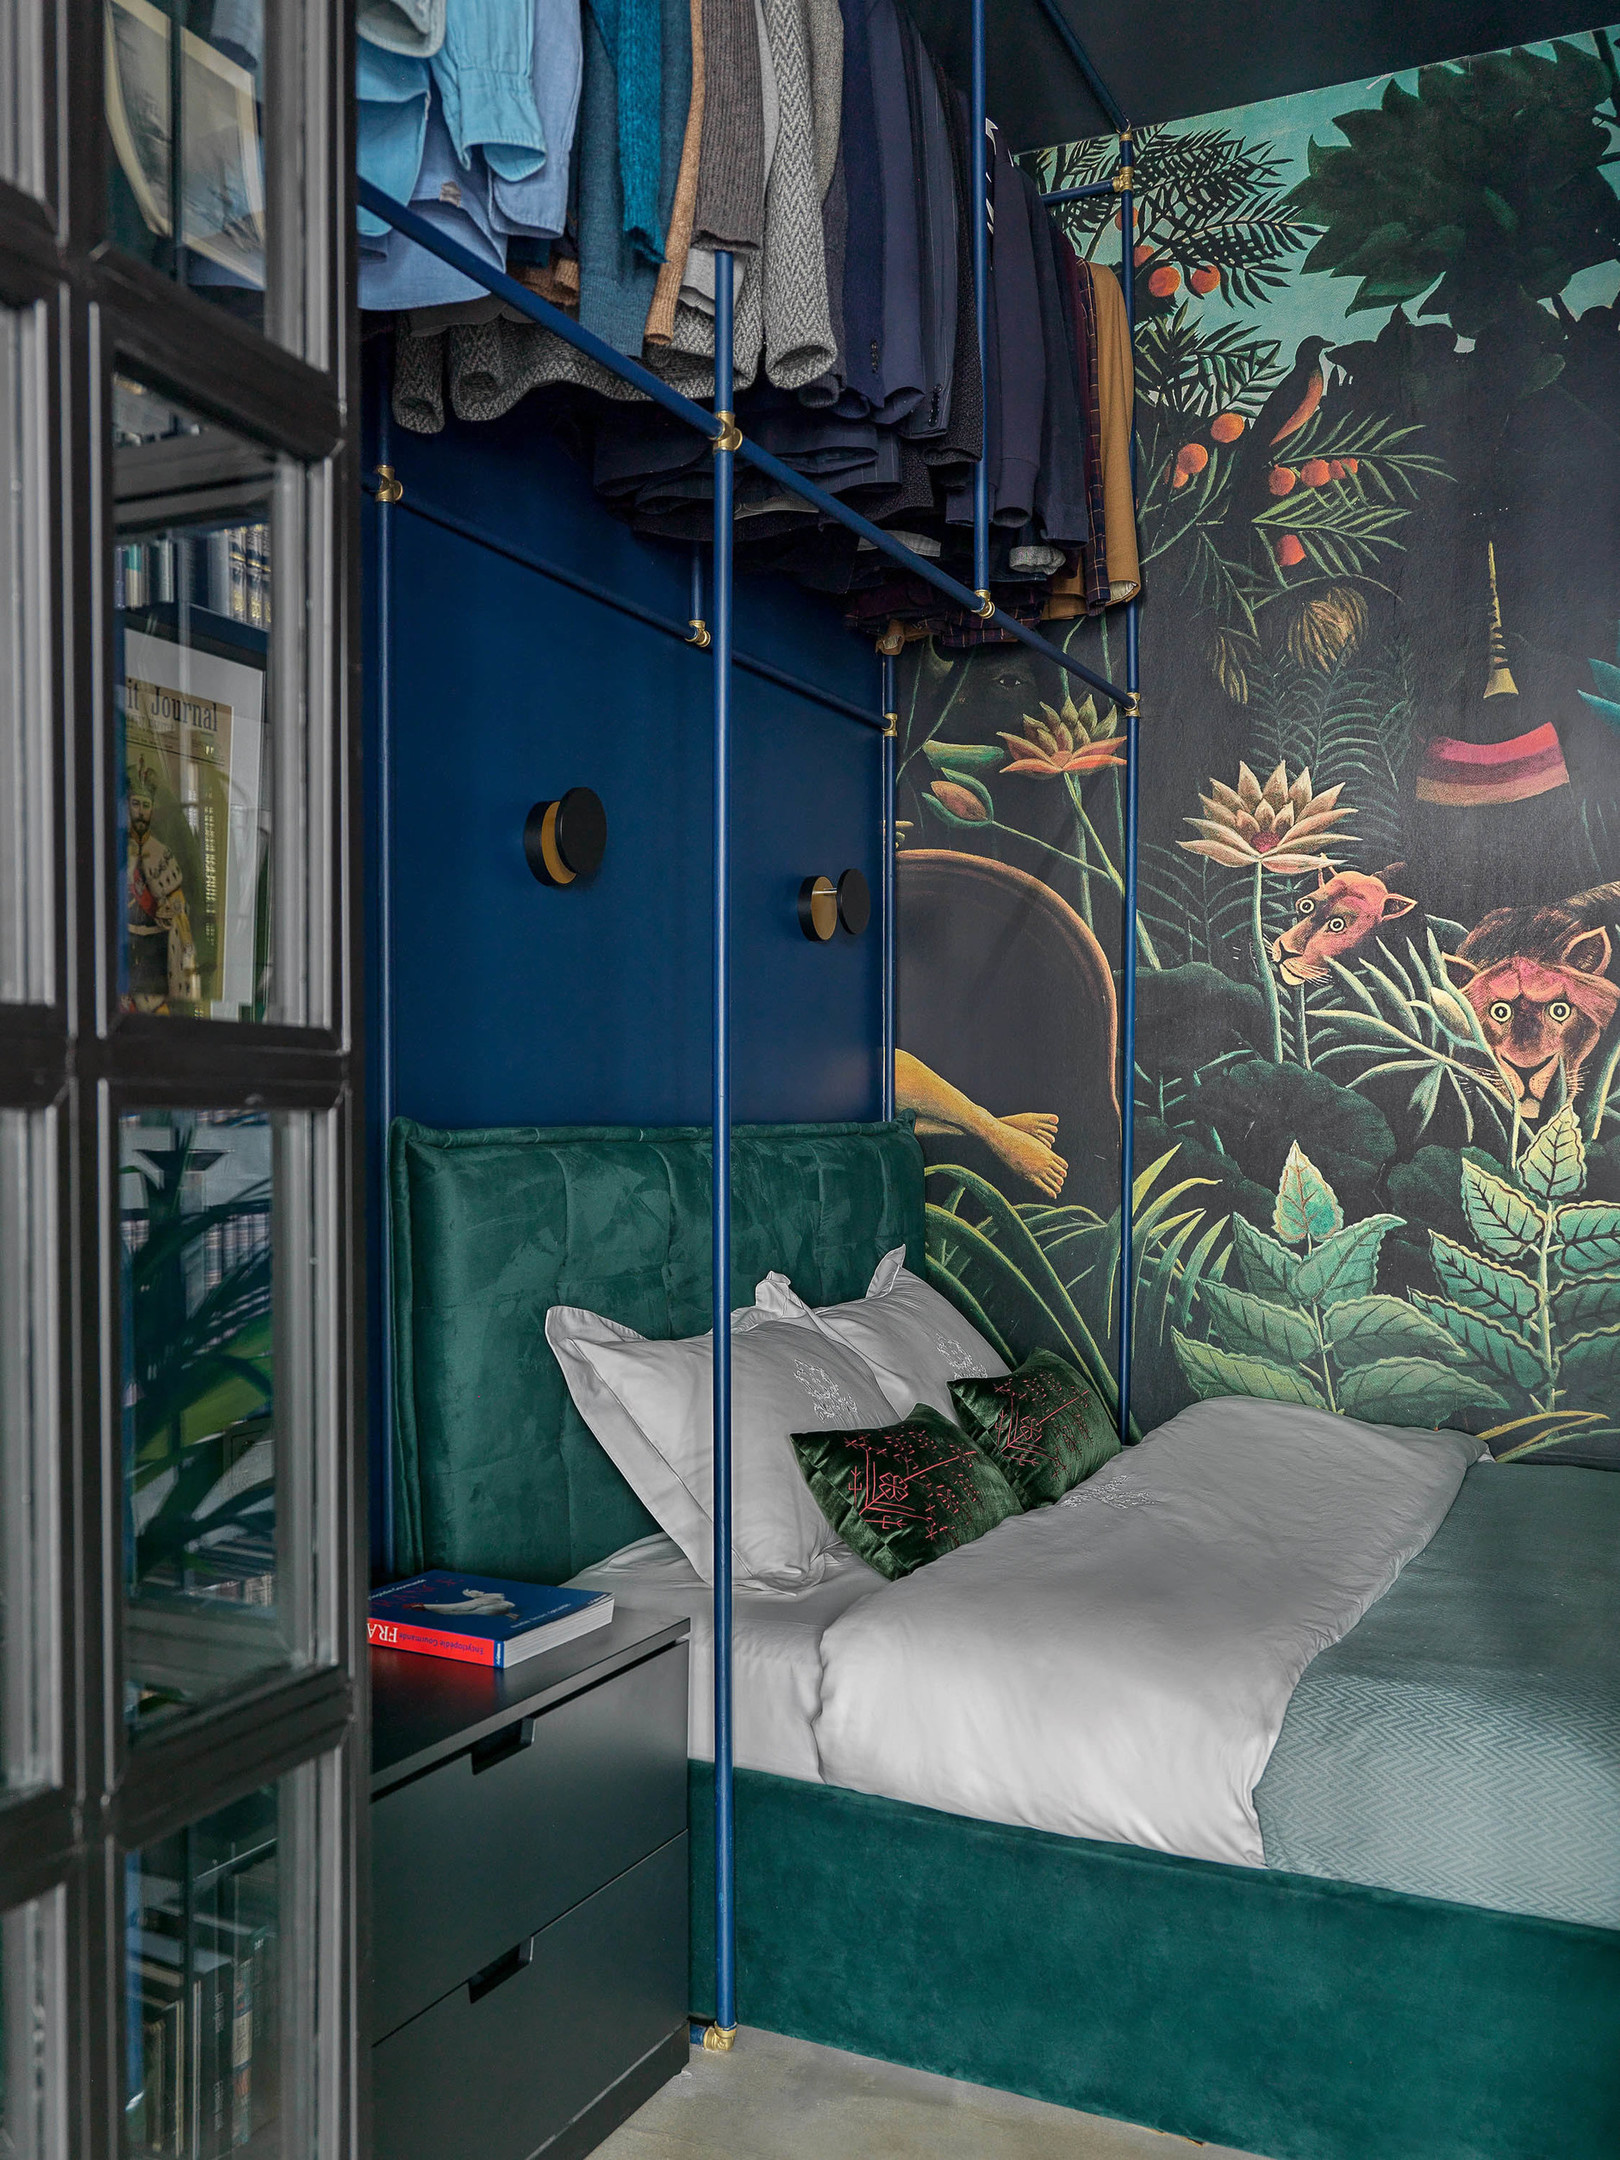 Tuy nhiên, bạn có thể thay thế tủ bằng móc treo, ví dụ như phòng ngủ minh họa này để tạo sự thông thoáng cho không gian.